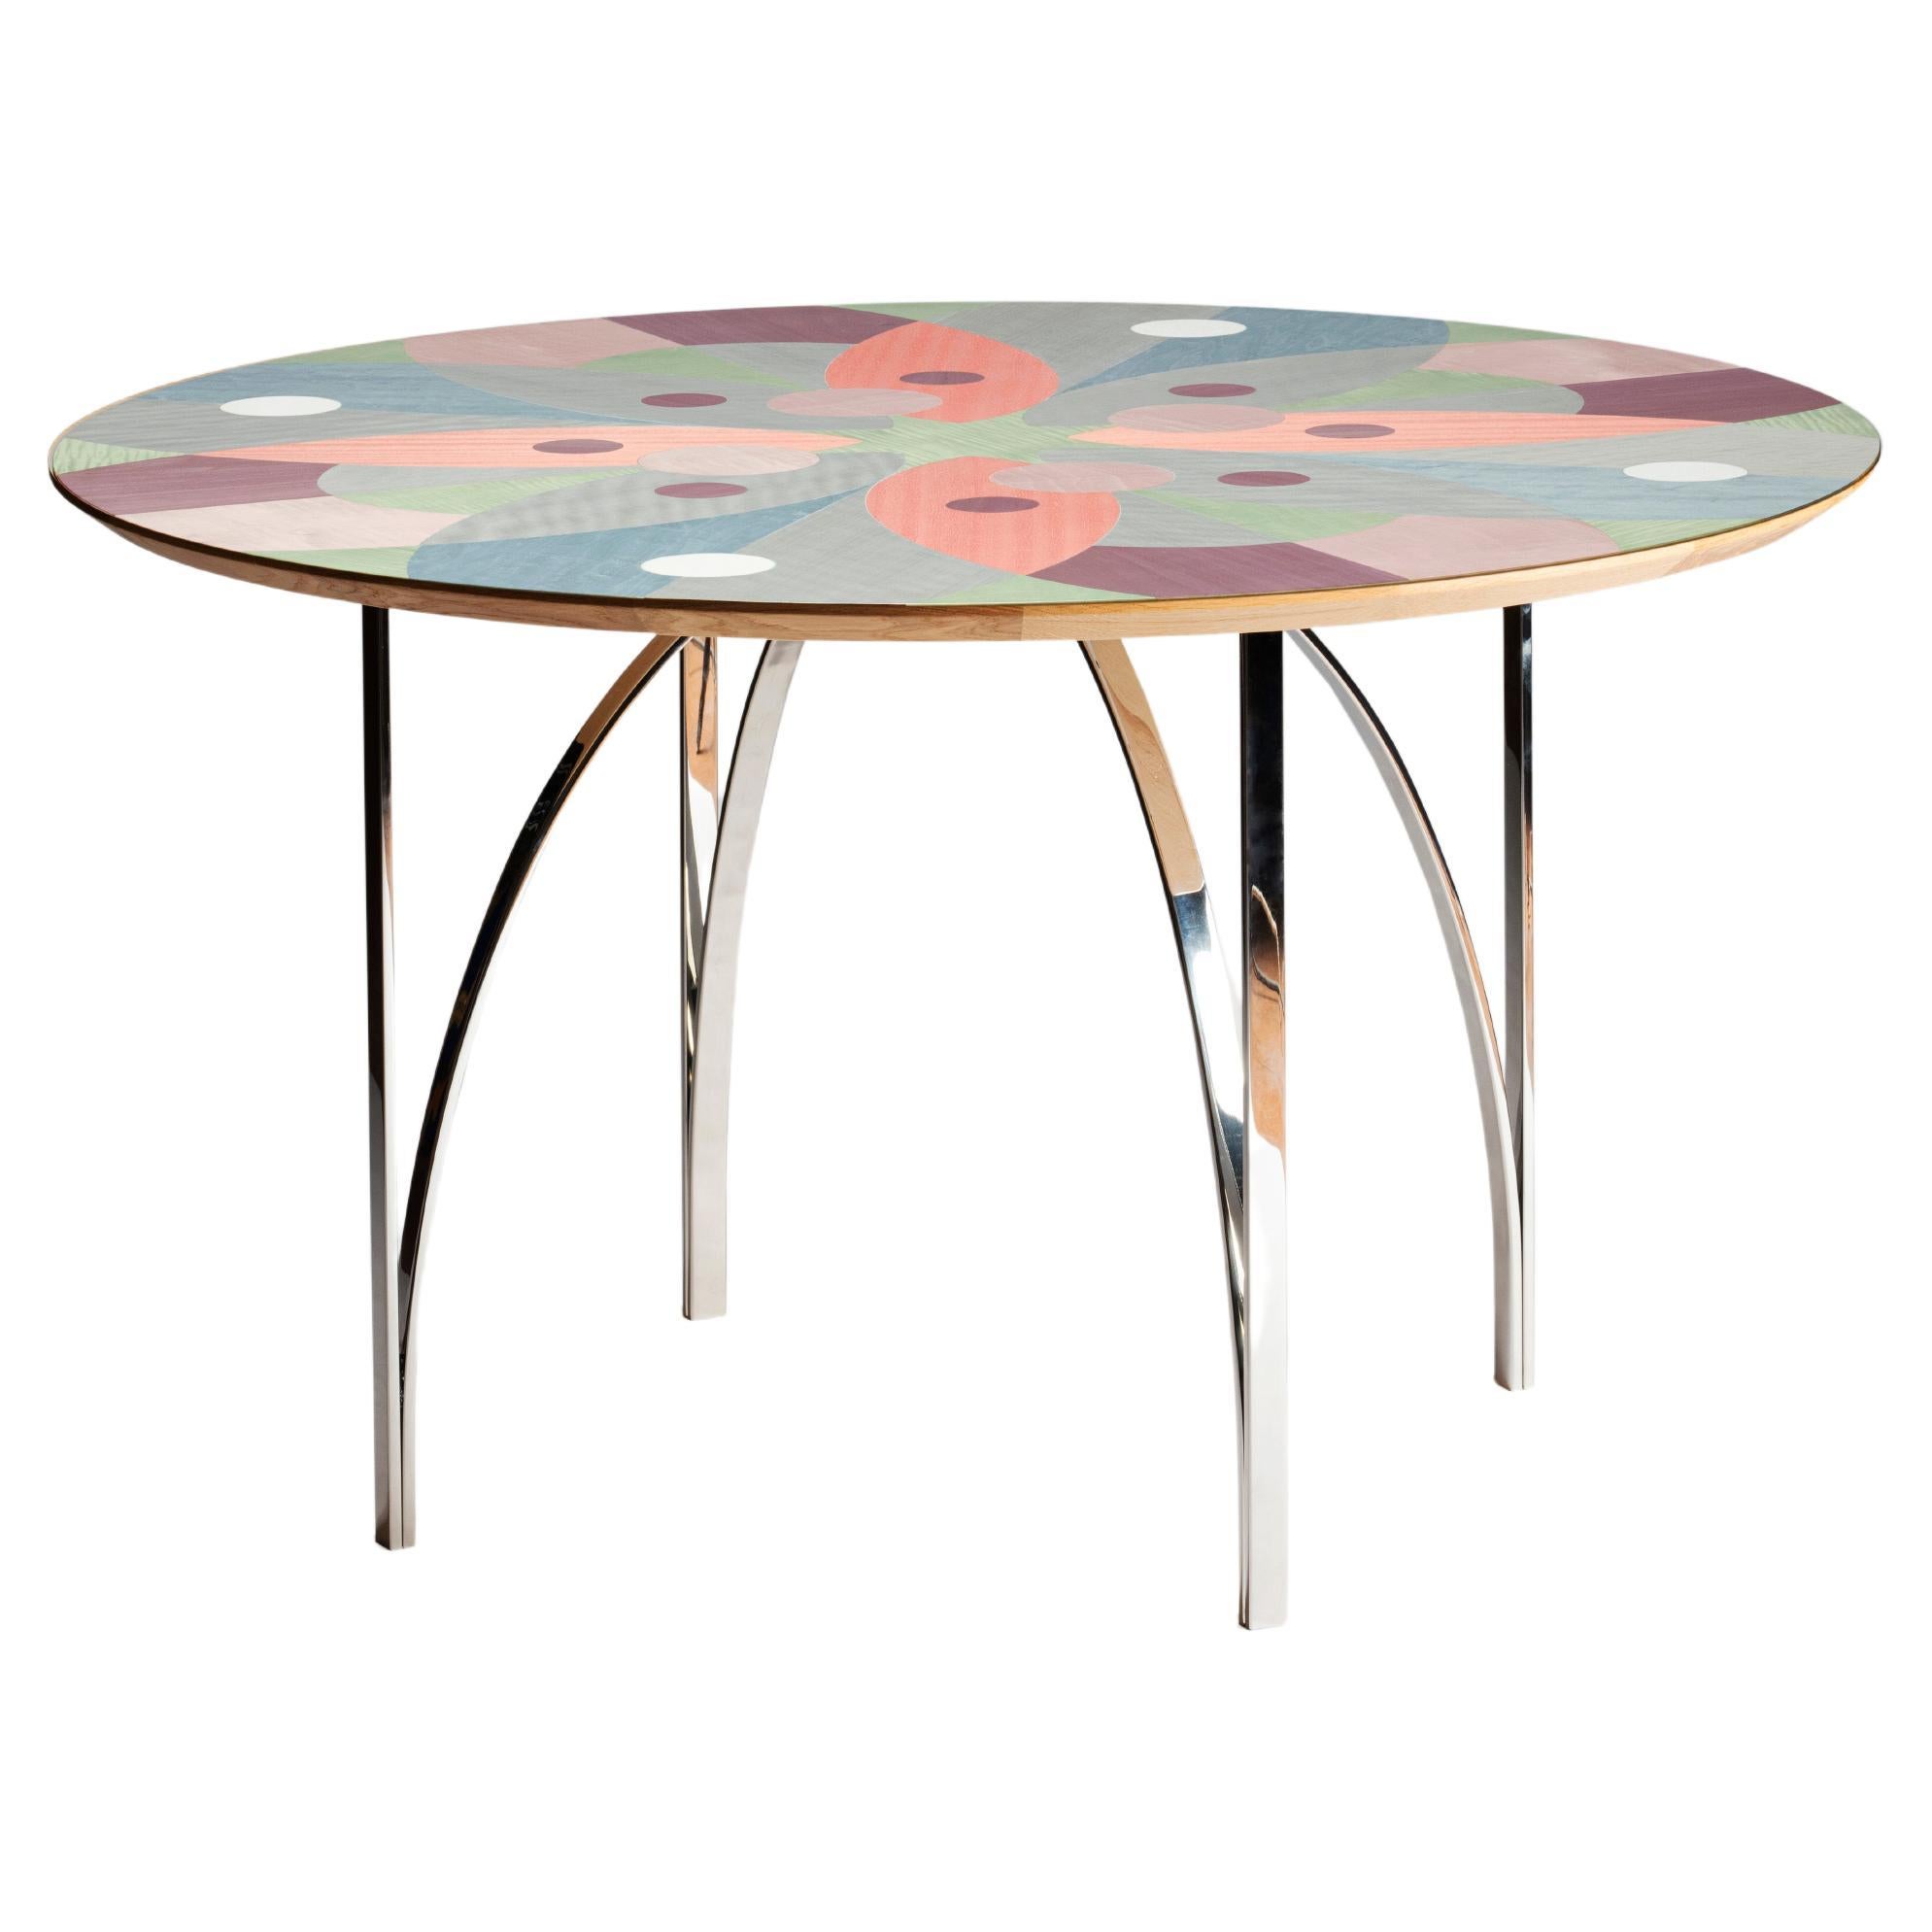 Table centrale de salle à manger contemporaine Serena Confalonieri Medulum en bois et acier coloré